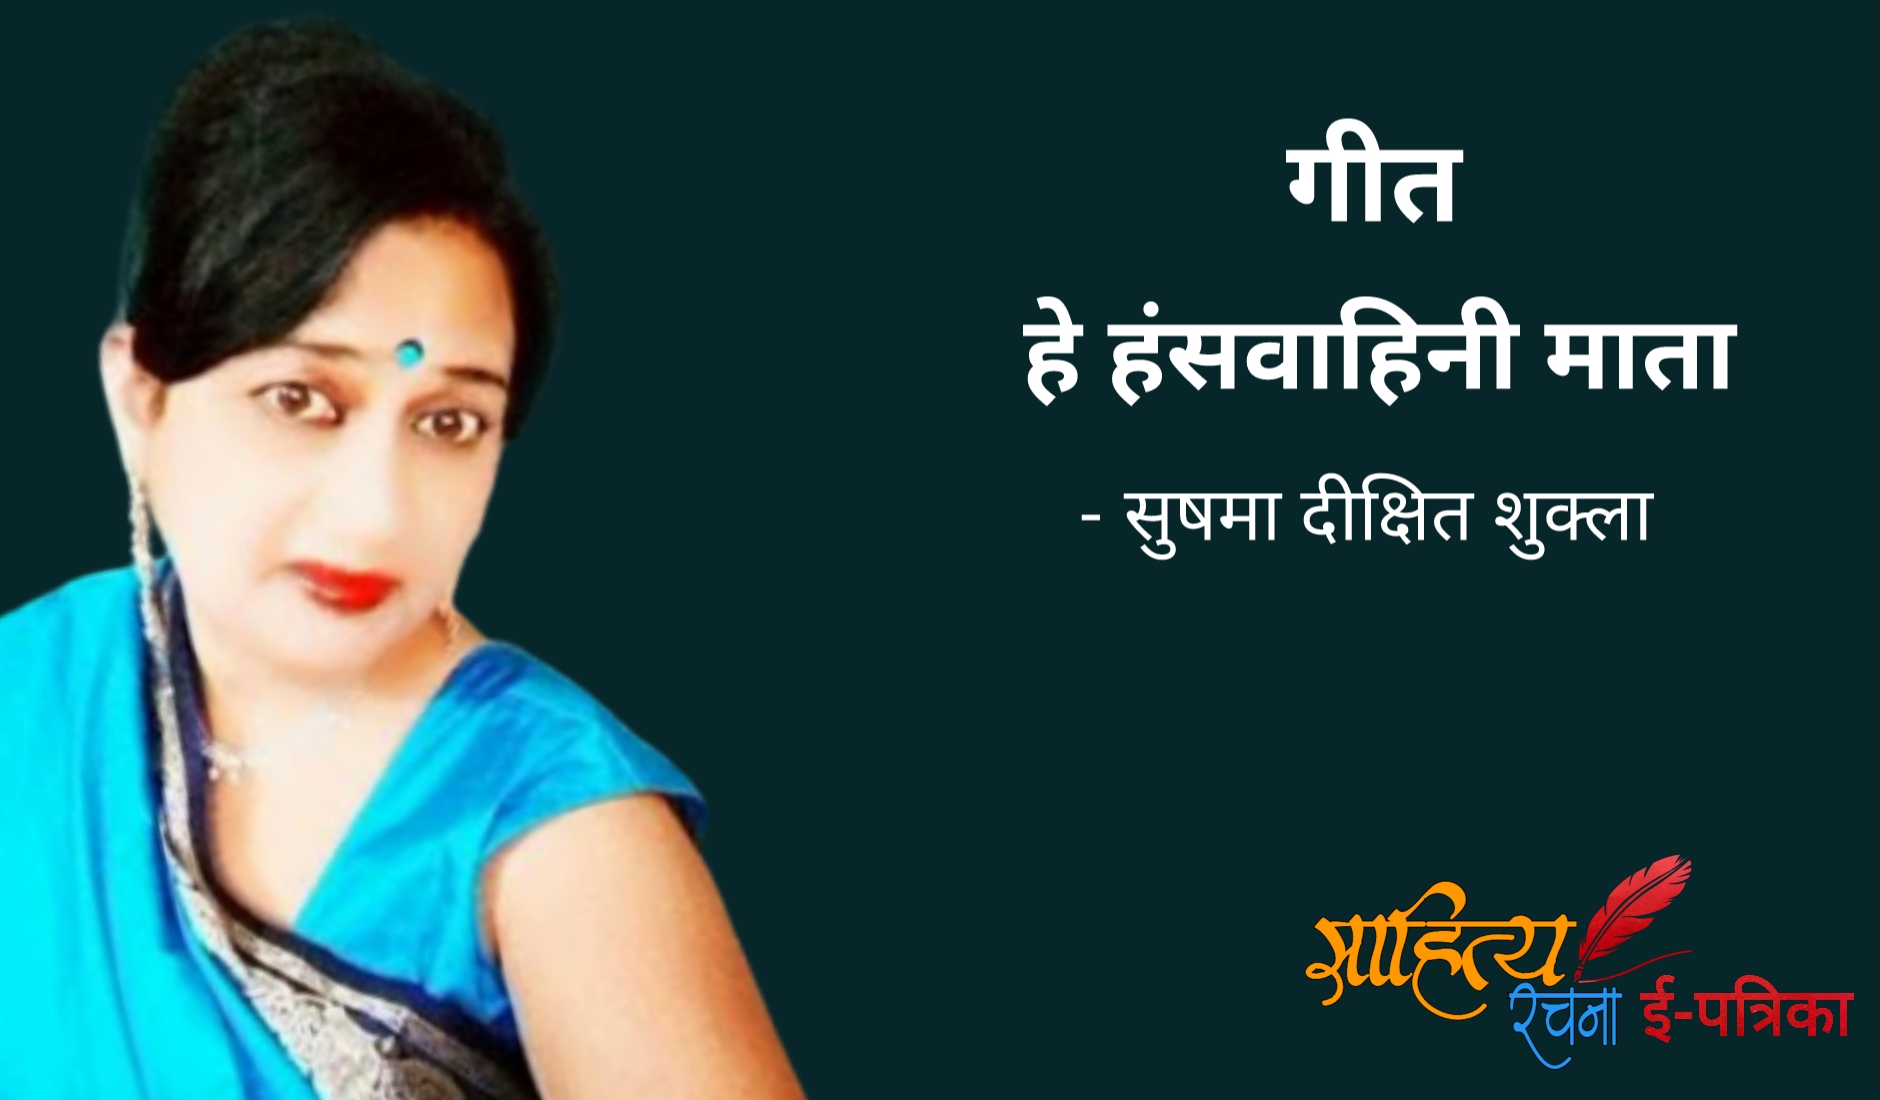 हे हंसवाहिनी माता - गीत - सुषमा दीक्षित शुक्ला | Hindi Geet - Hey Hansavaahini Mata - Sushma Dixit Shukla | माँ सरस्वती गीत